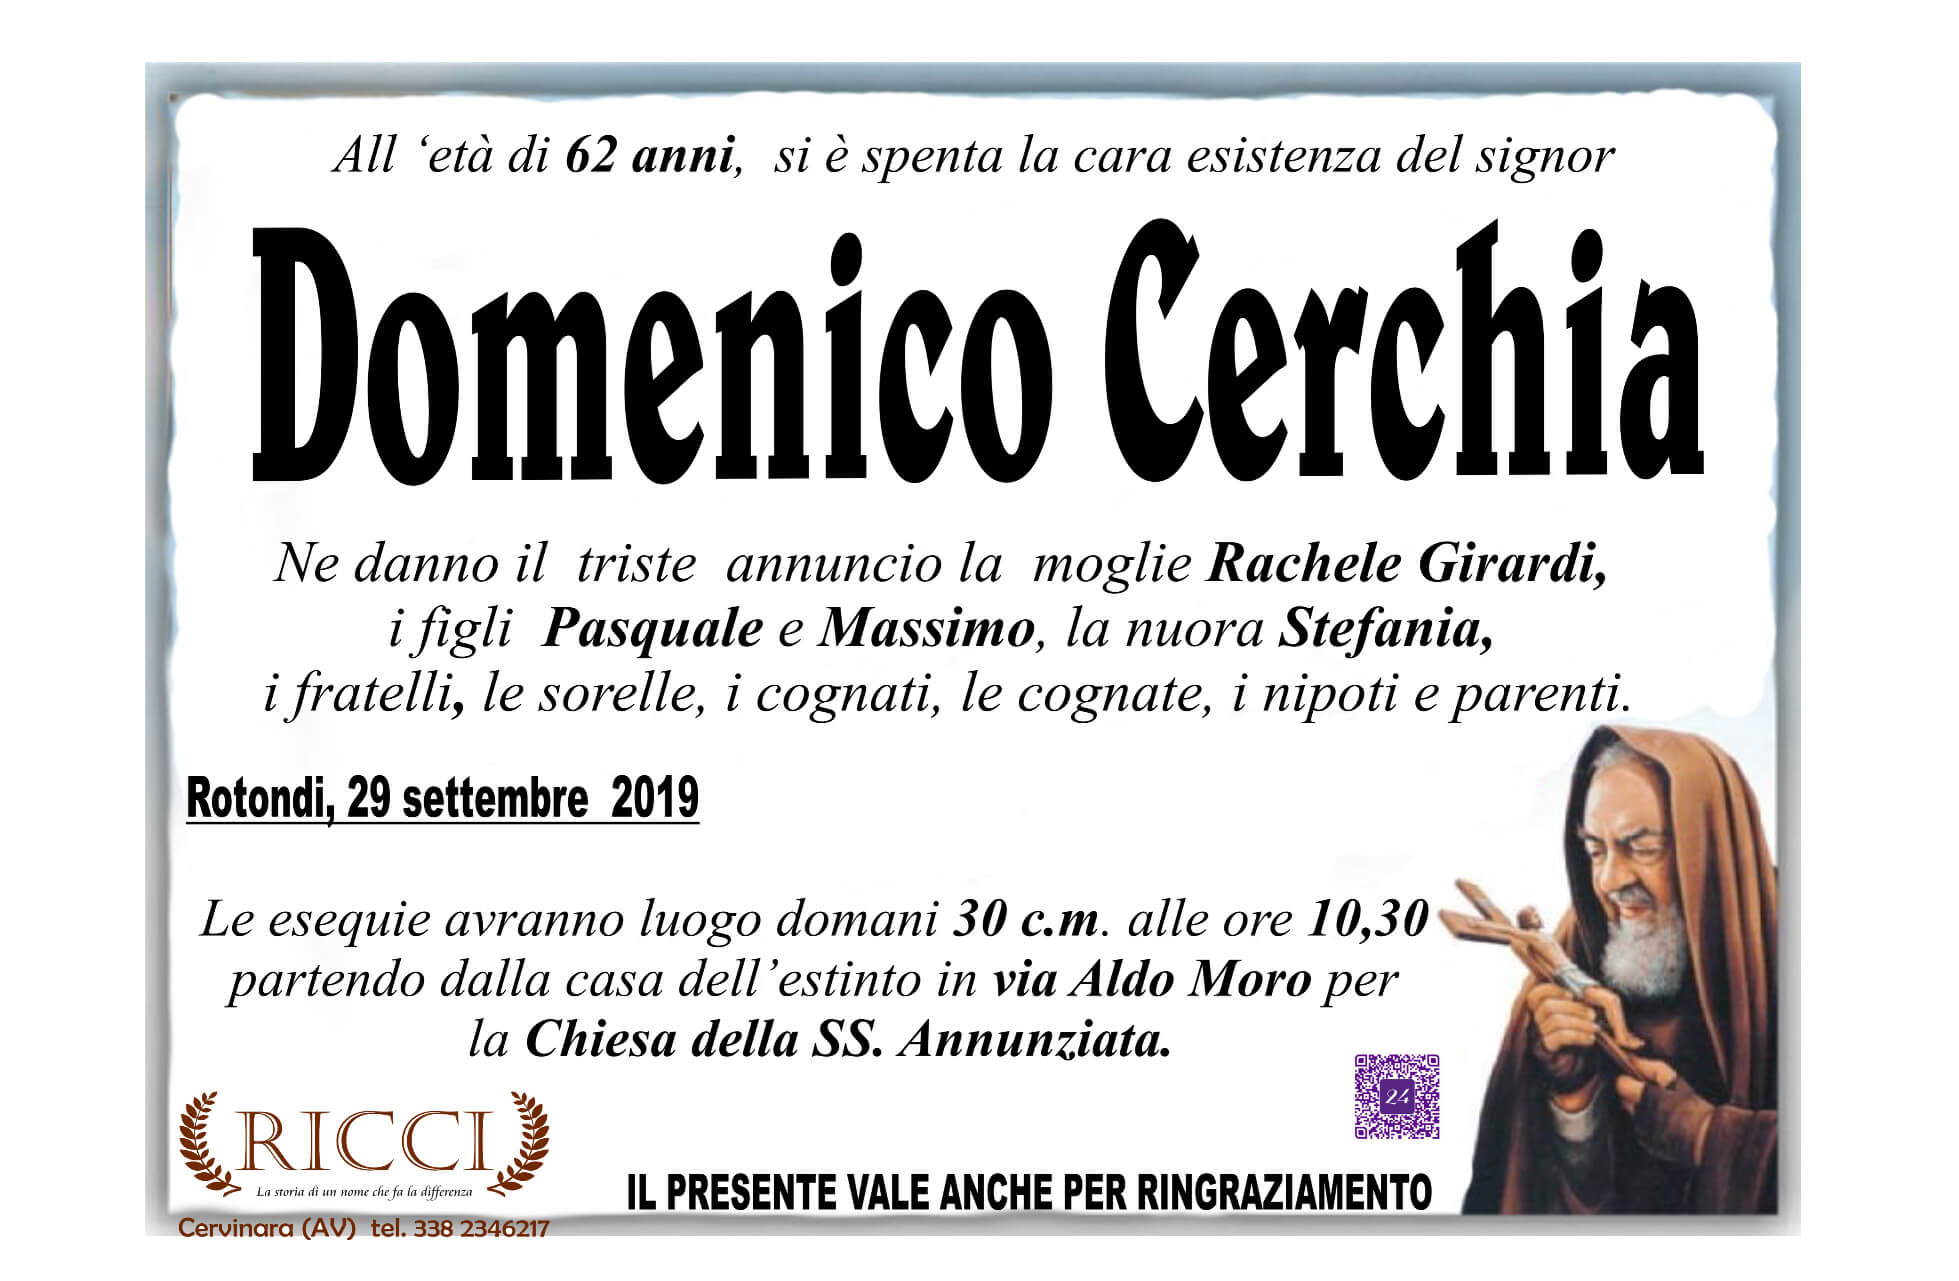 Domenico Cerchia